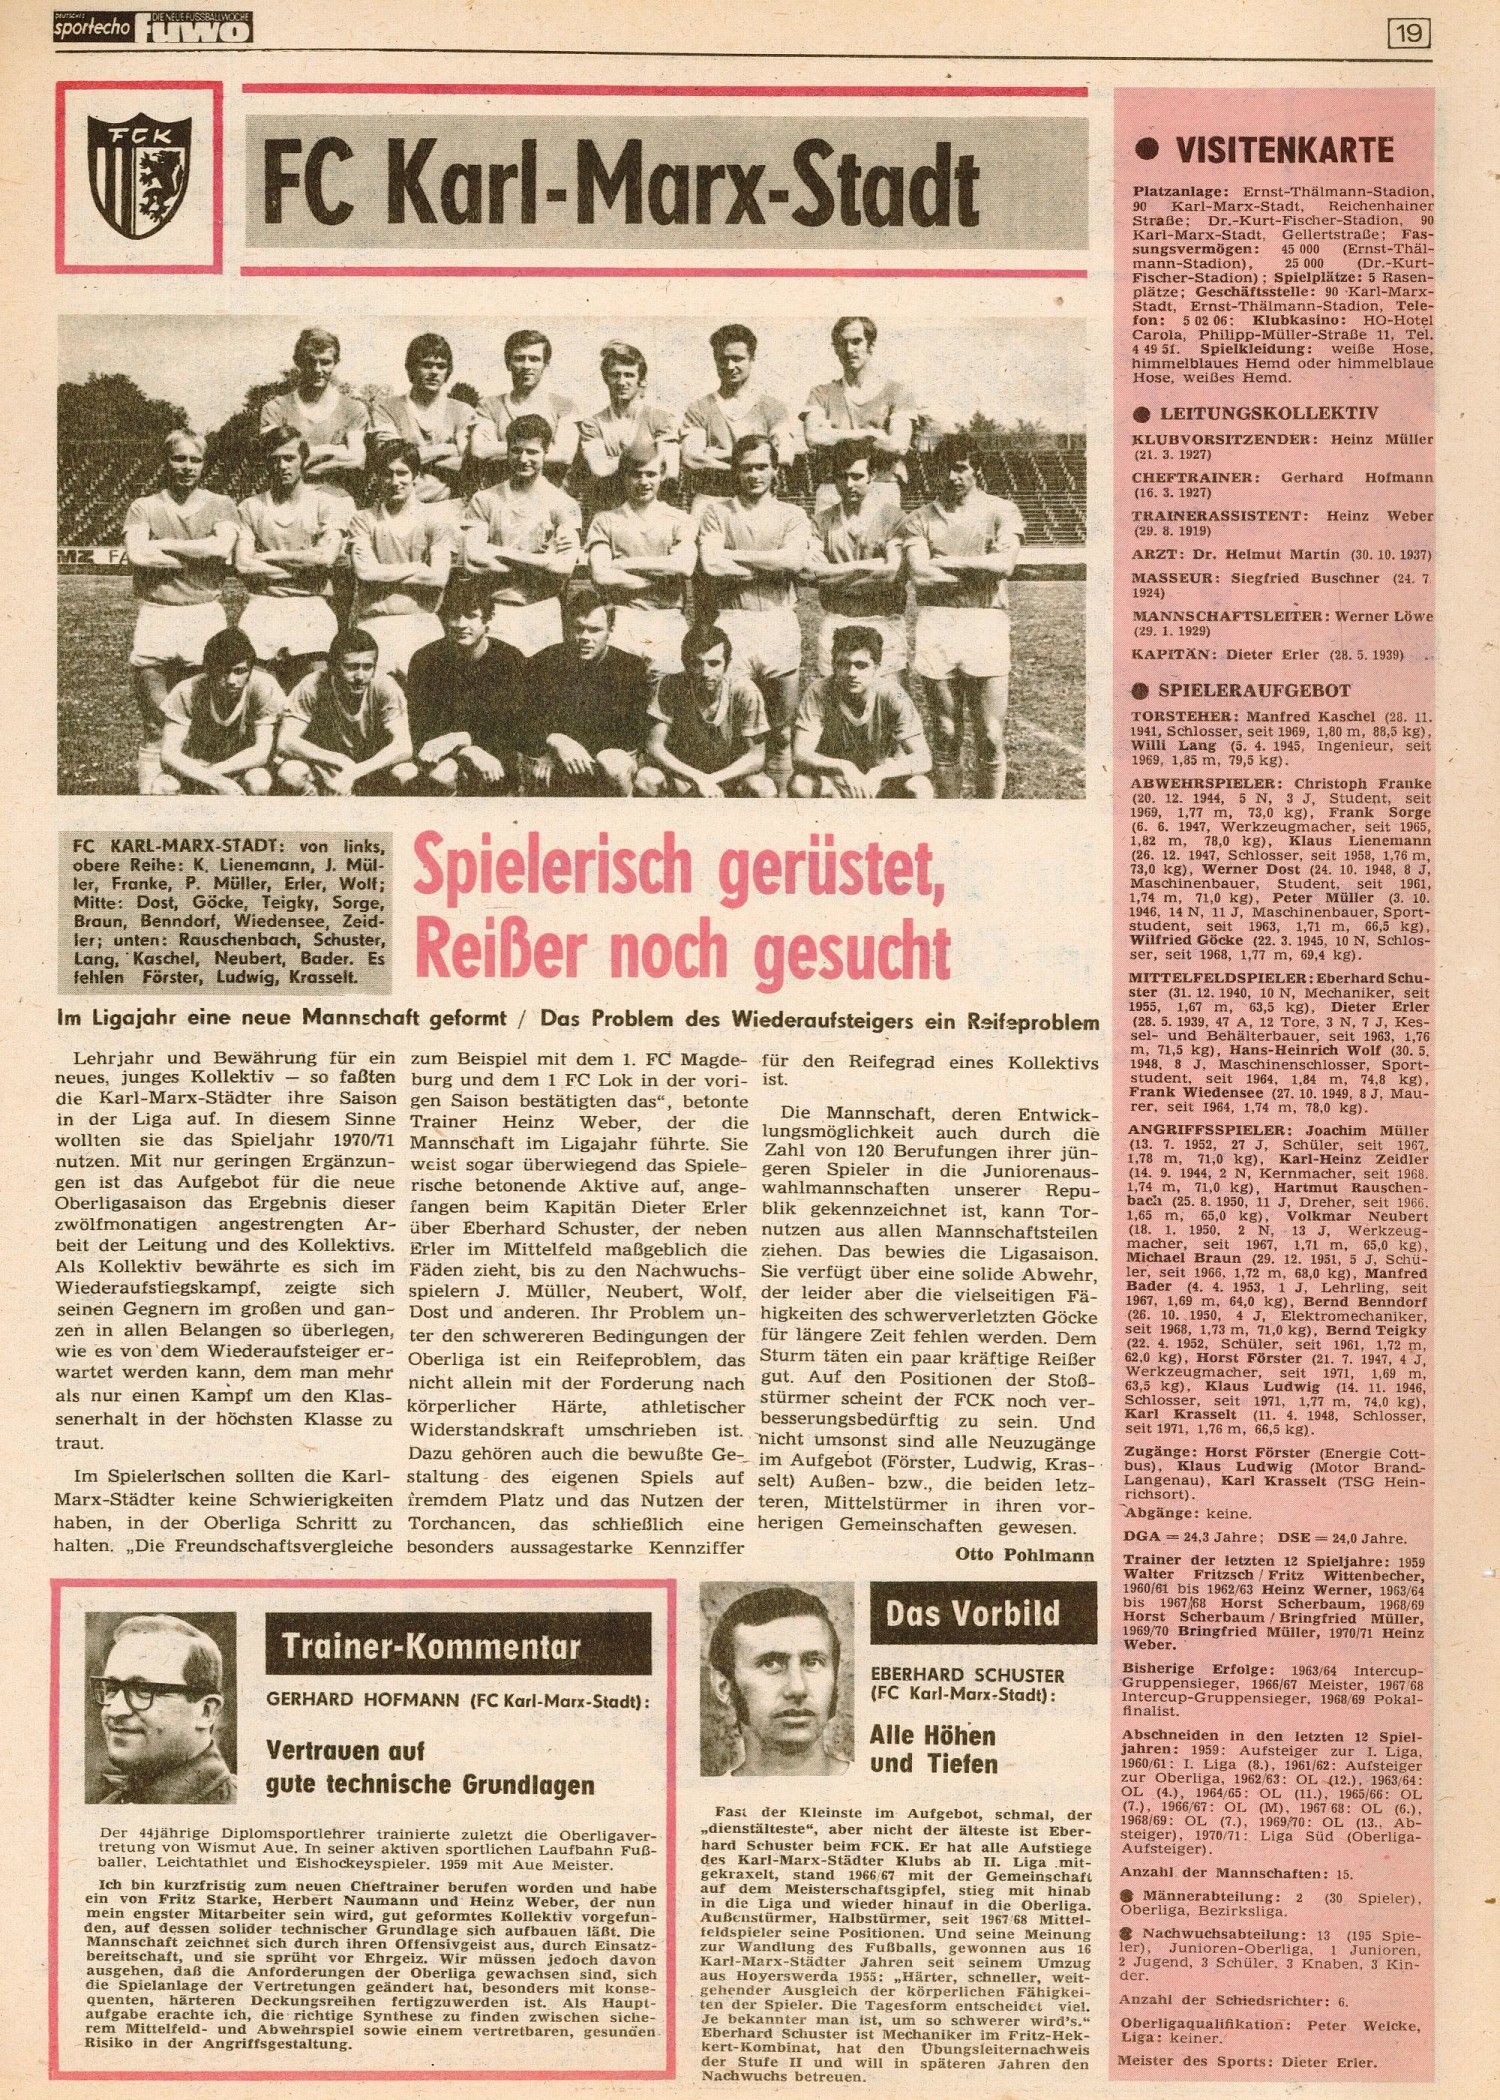 Sonderausgabe Sportecho / Fussballwoche - August 1971